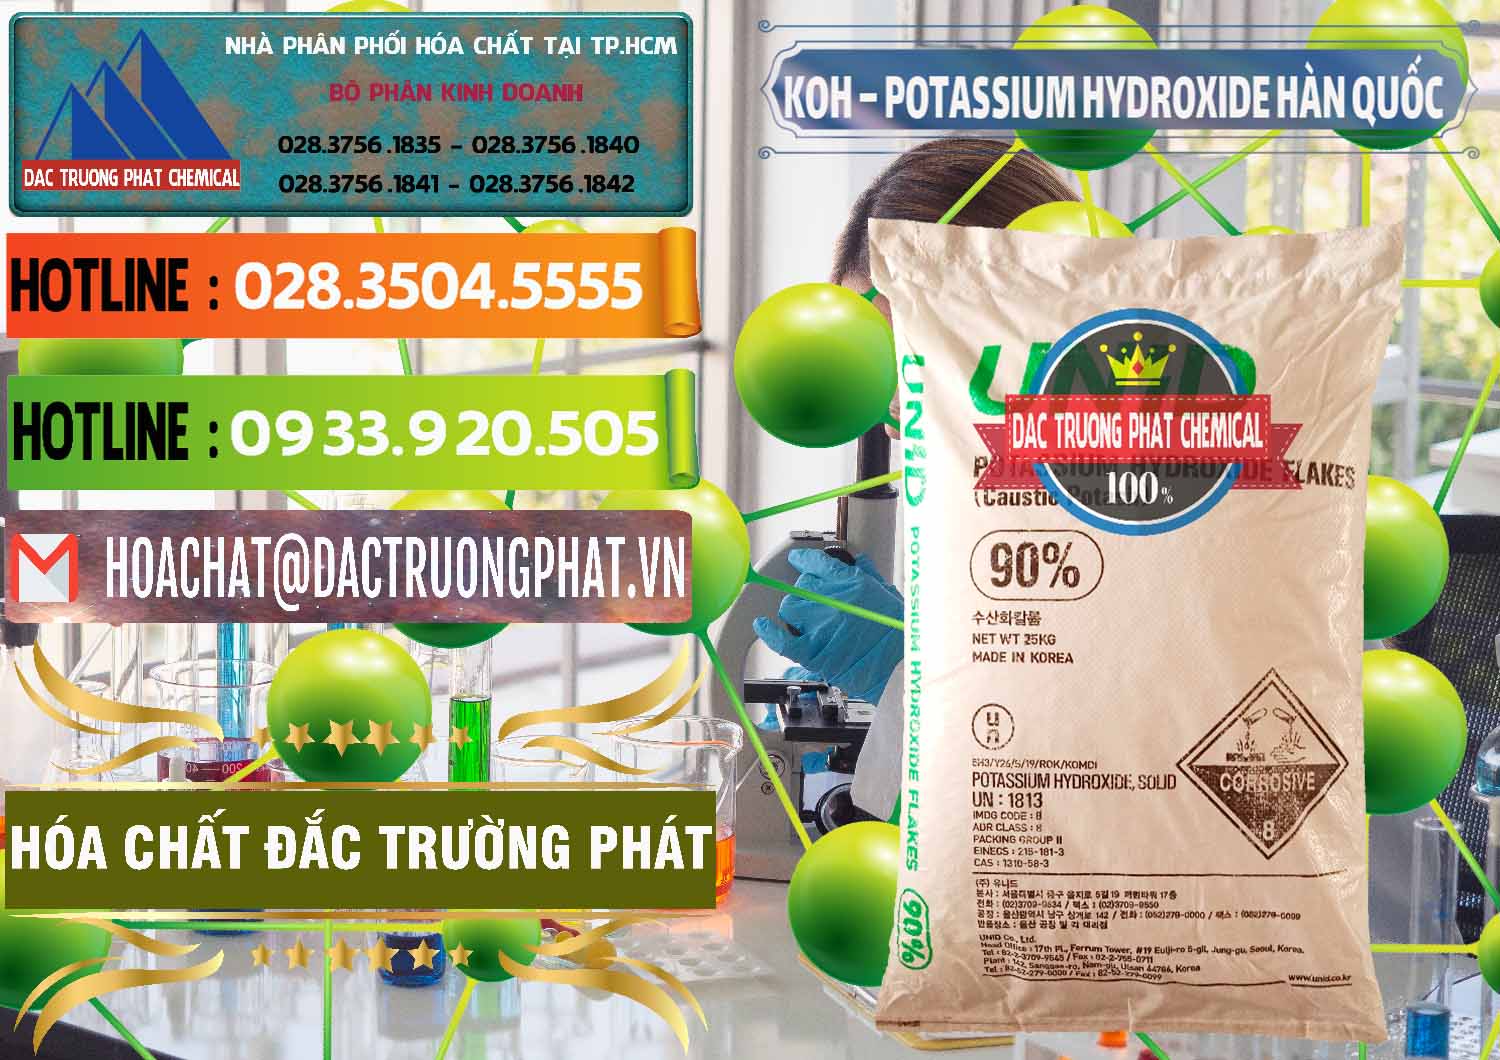 Đơn vị chuyên cung ứng và bán KOH ( 90%) – Potassium Hydroxide Unid Hàn Quốc Korea - 0090 - Công ty chuyên phân phối & bán hóa chất tại TP.HCM - cungcaphoachat.com.vn